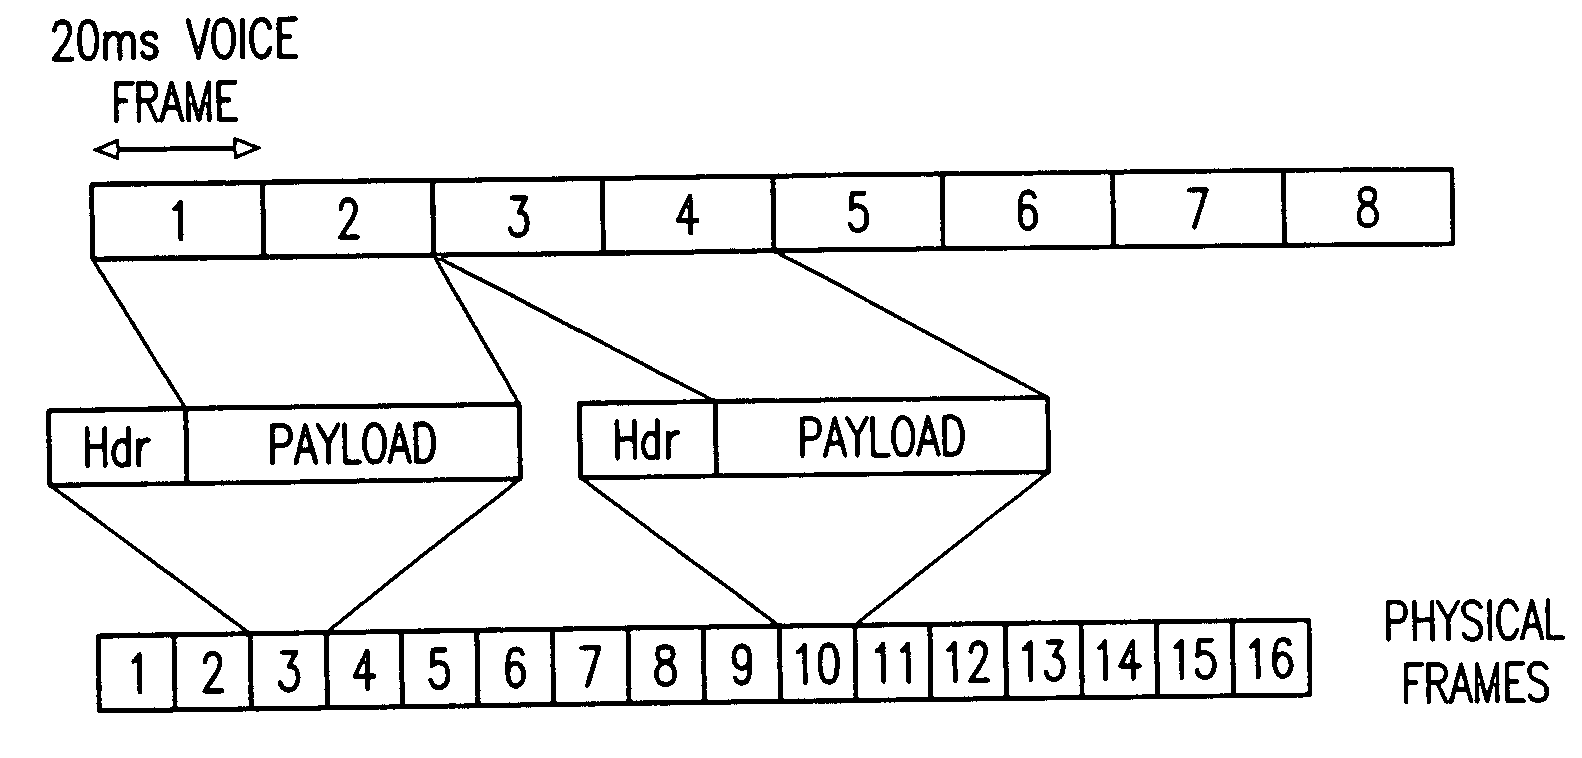 Method of frame aggregation